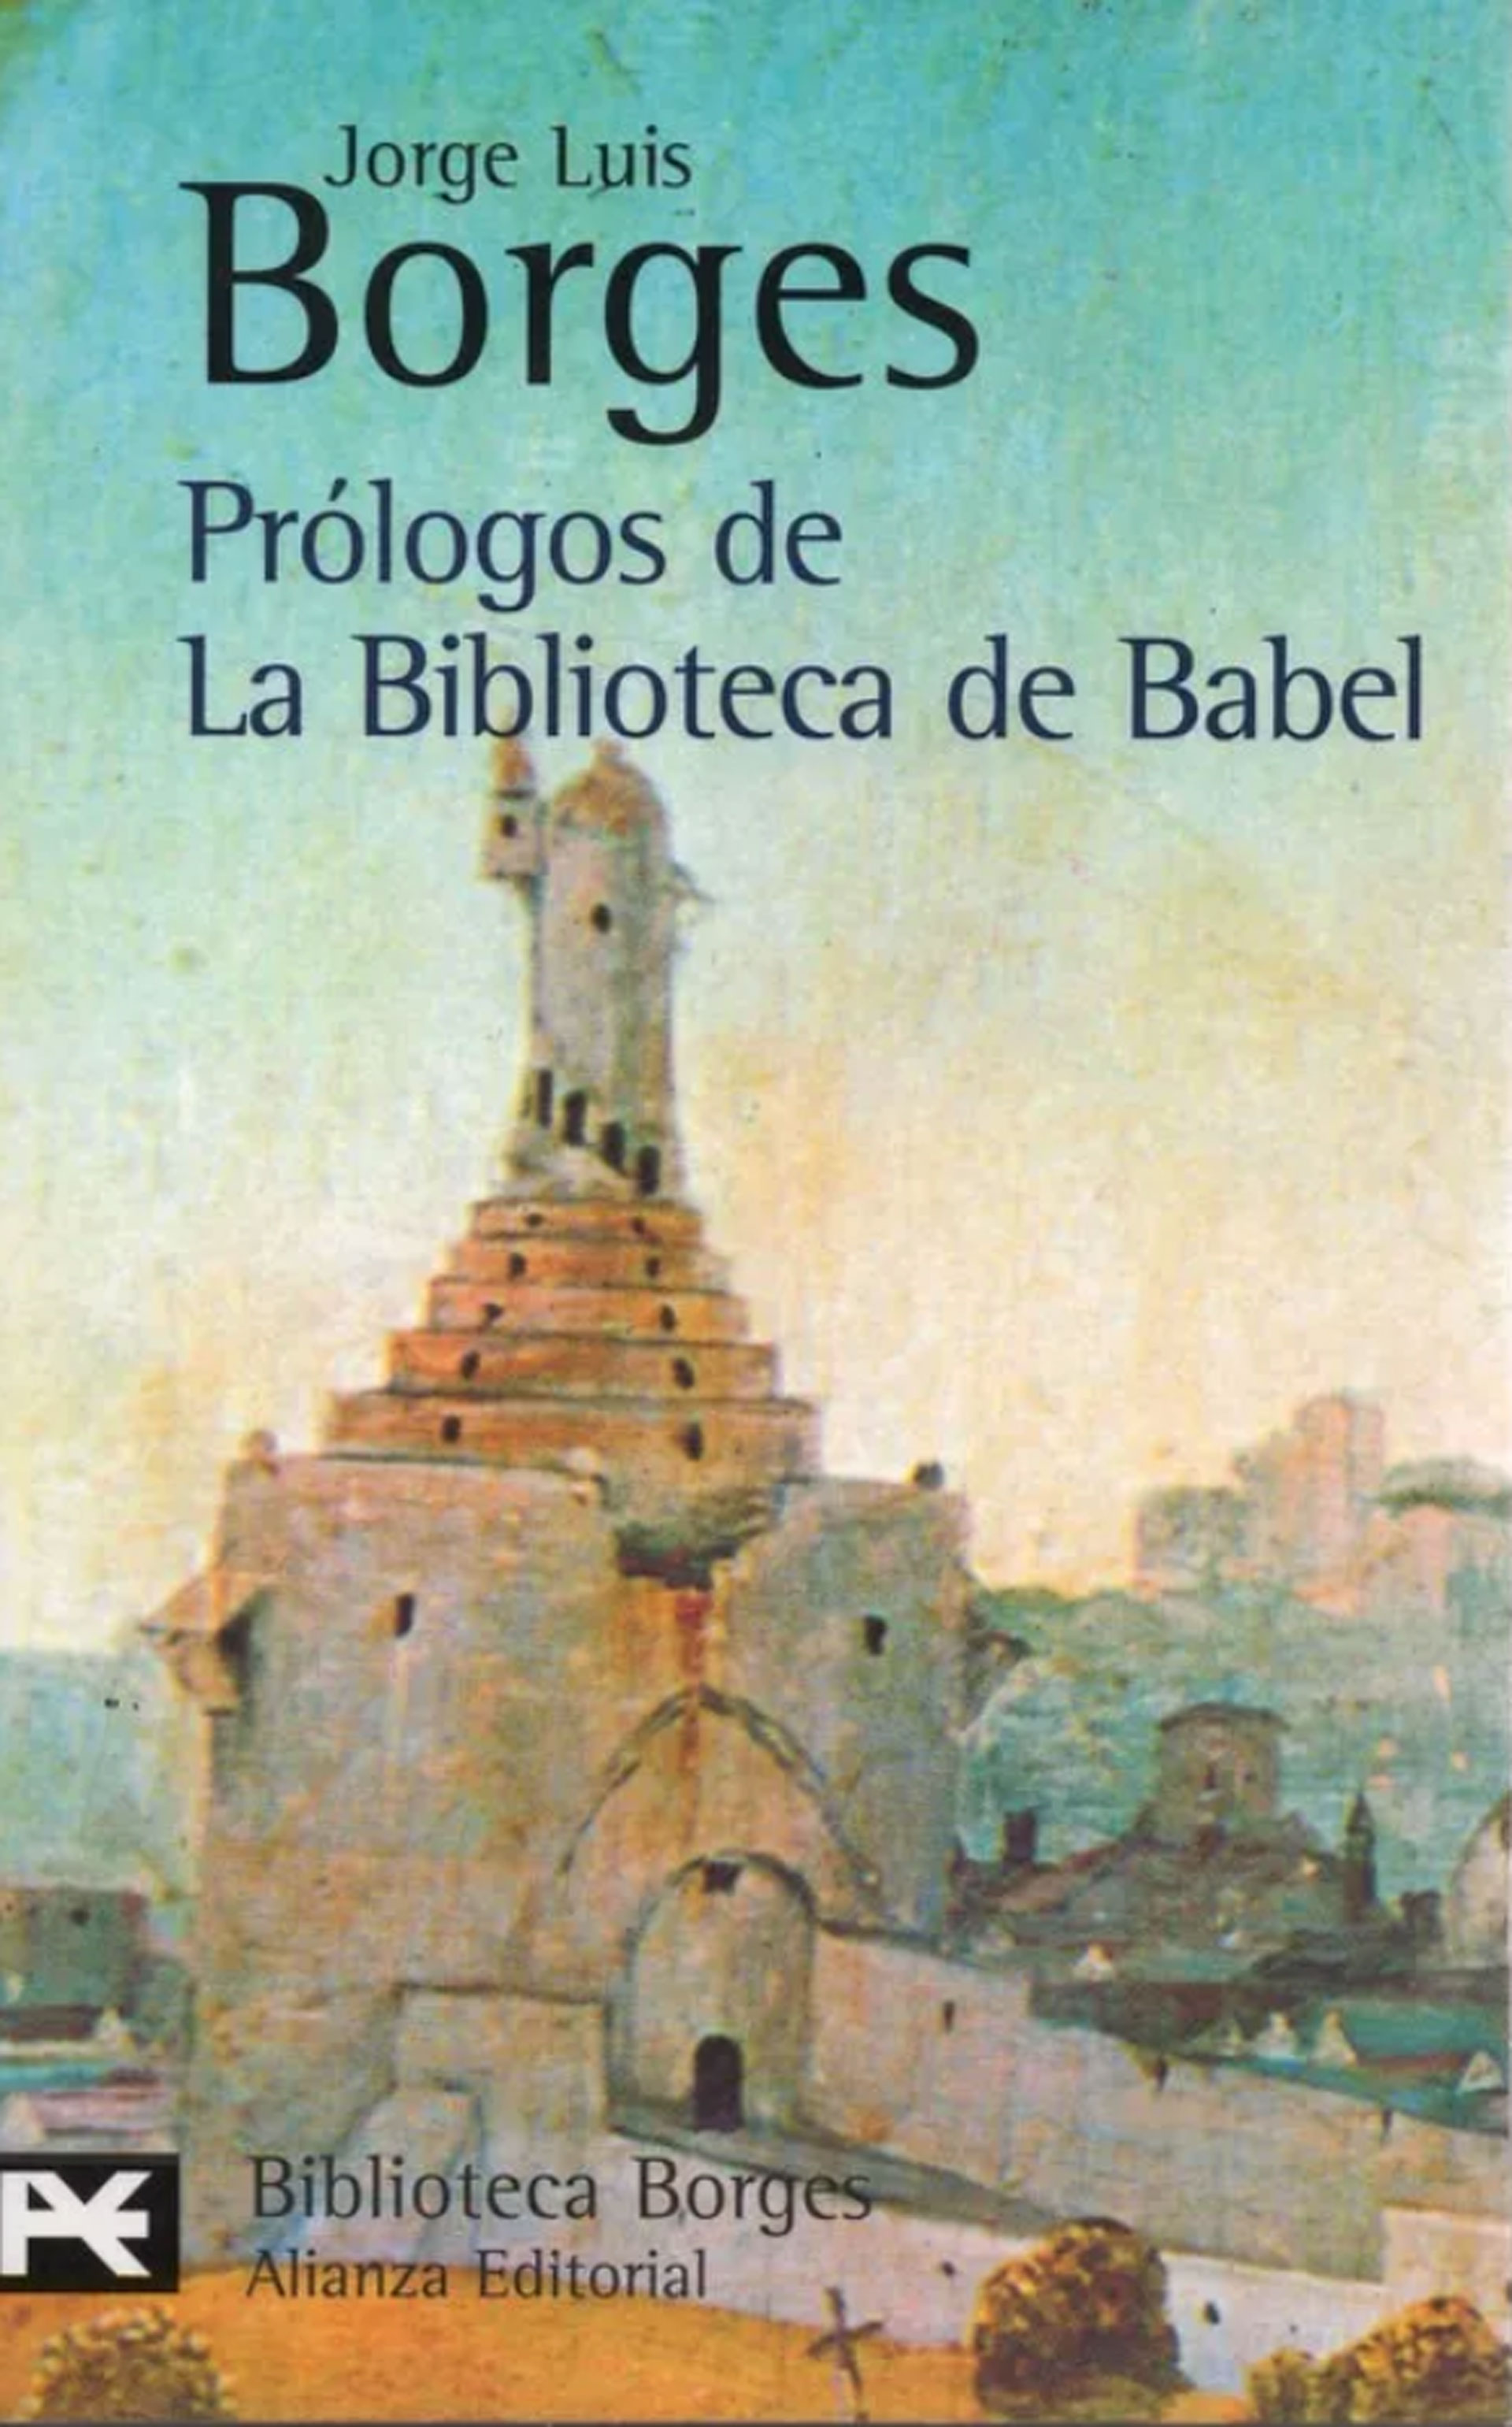 La portada de la edición de Alianza con los prólogos de Borges a la Biblioteca de Babel.